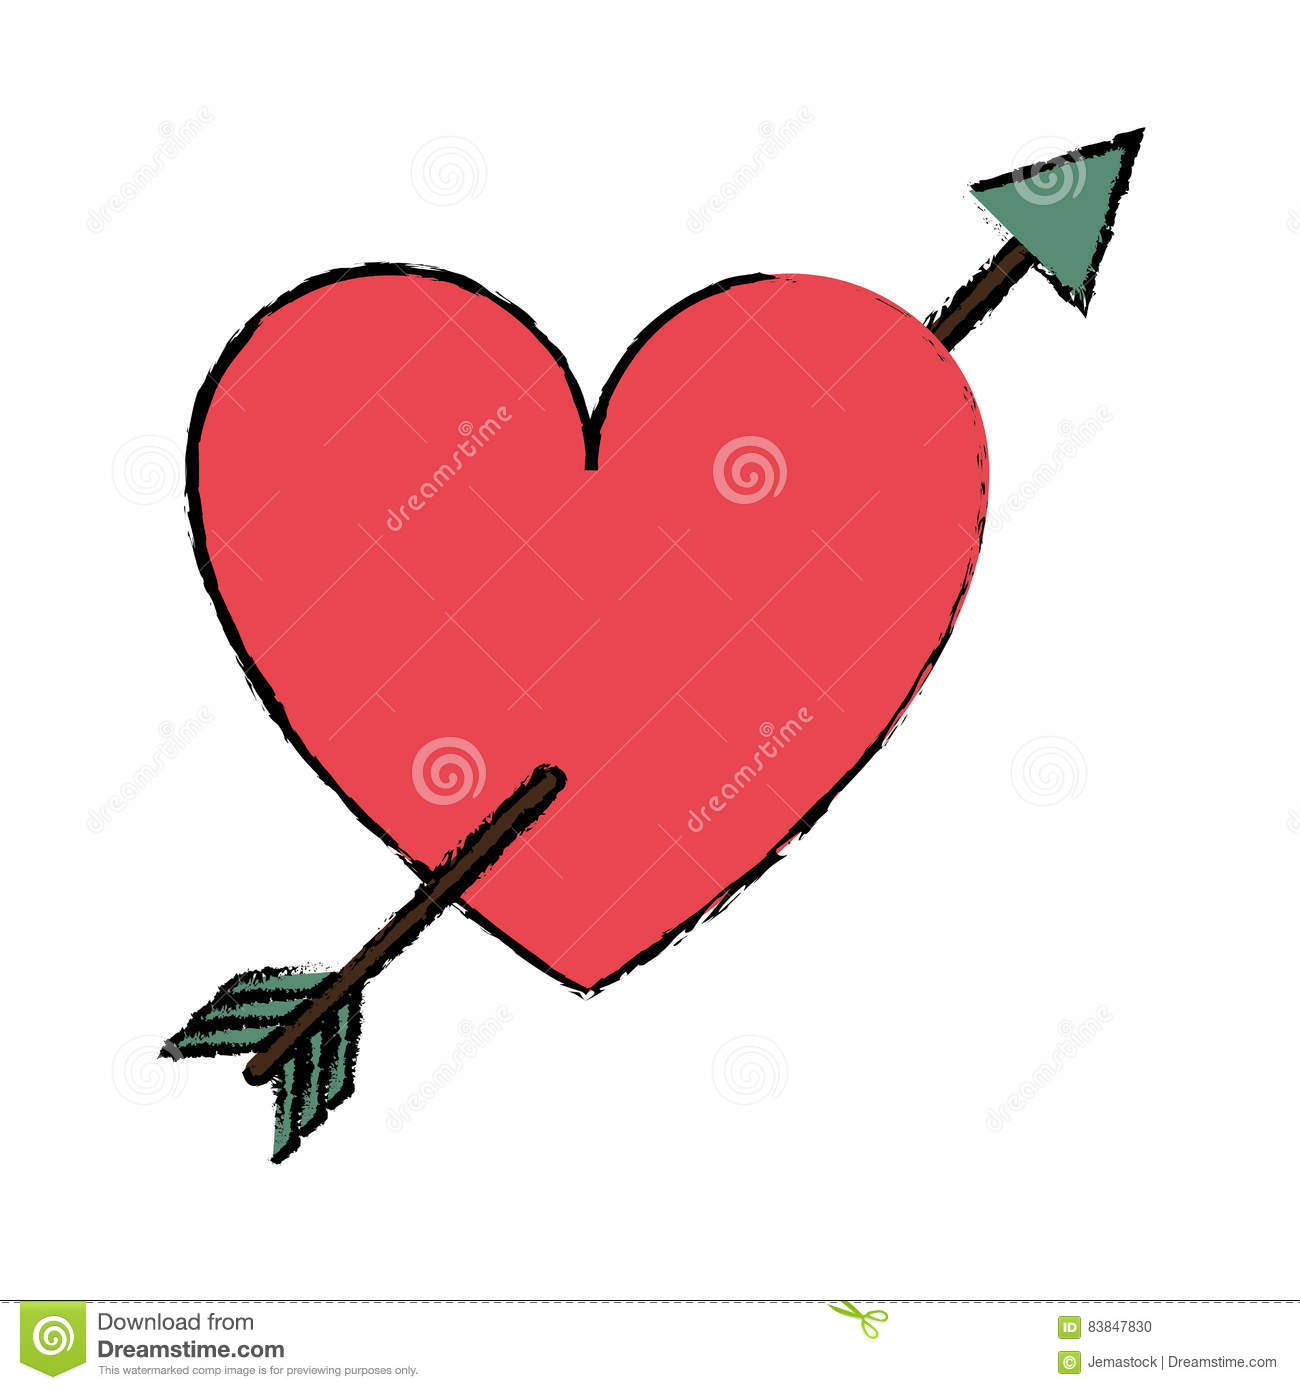 Coeur Rouge De Dessin Avec La Valentine D'Amour De Flèche Illustration intérieur Dessin De Coeur D Amour